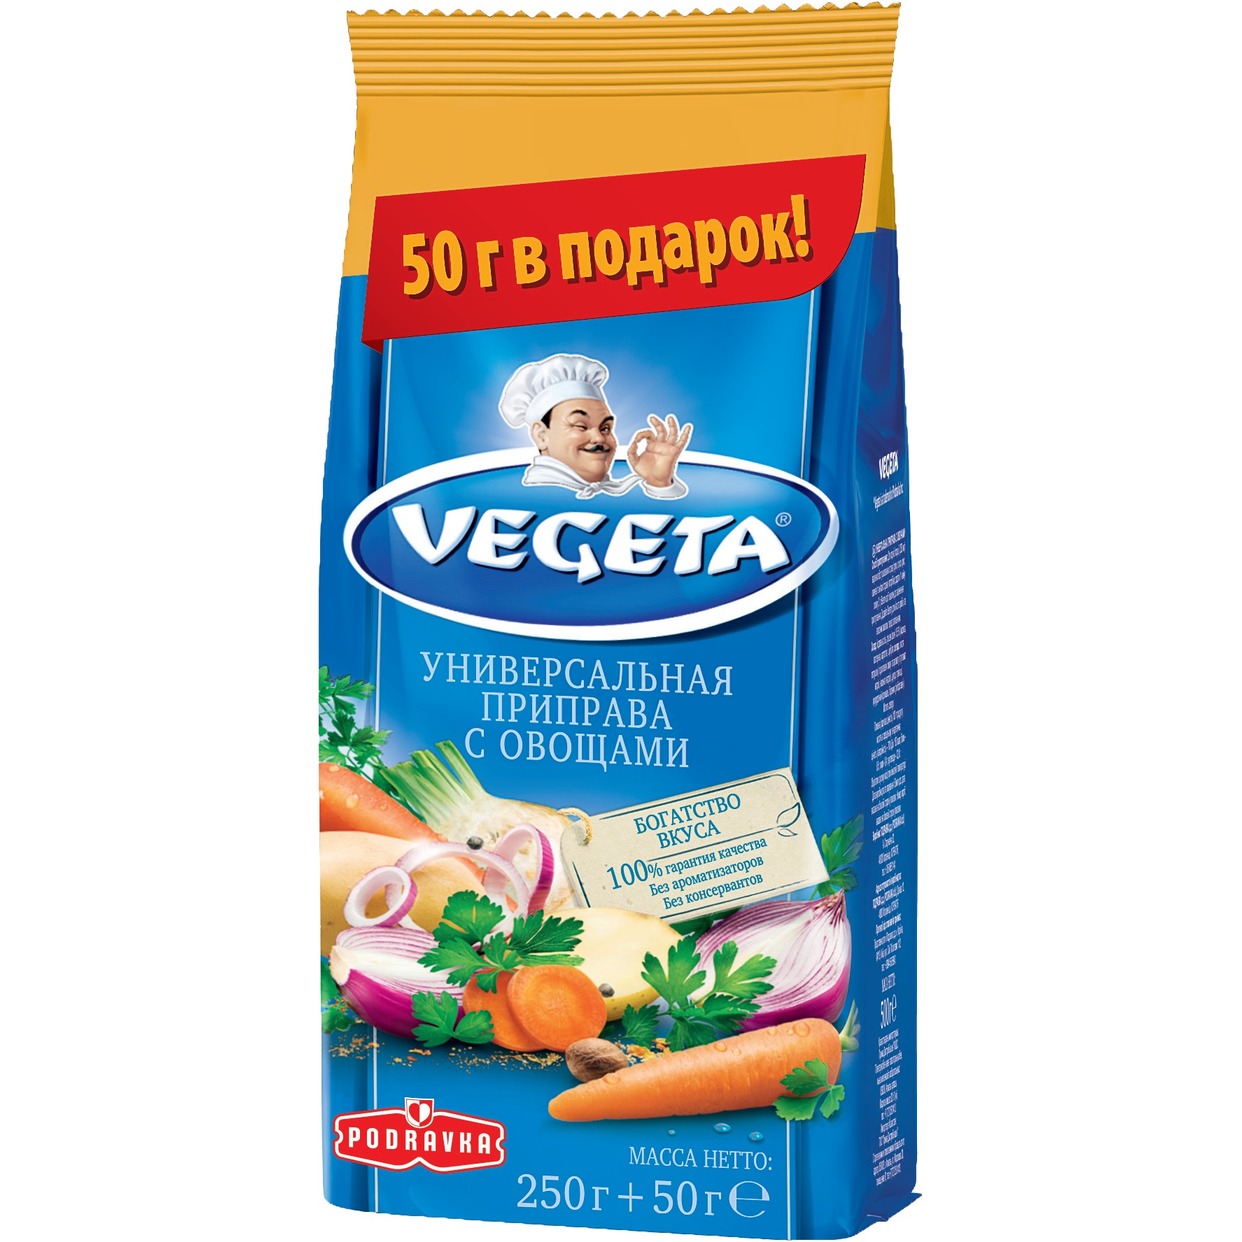 Приправа Vegeta, 300 г по акции в Пятерочке